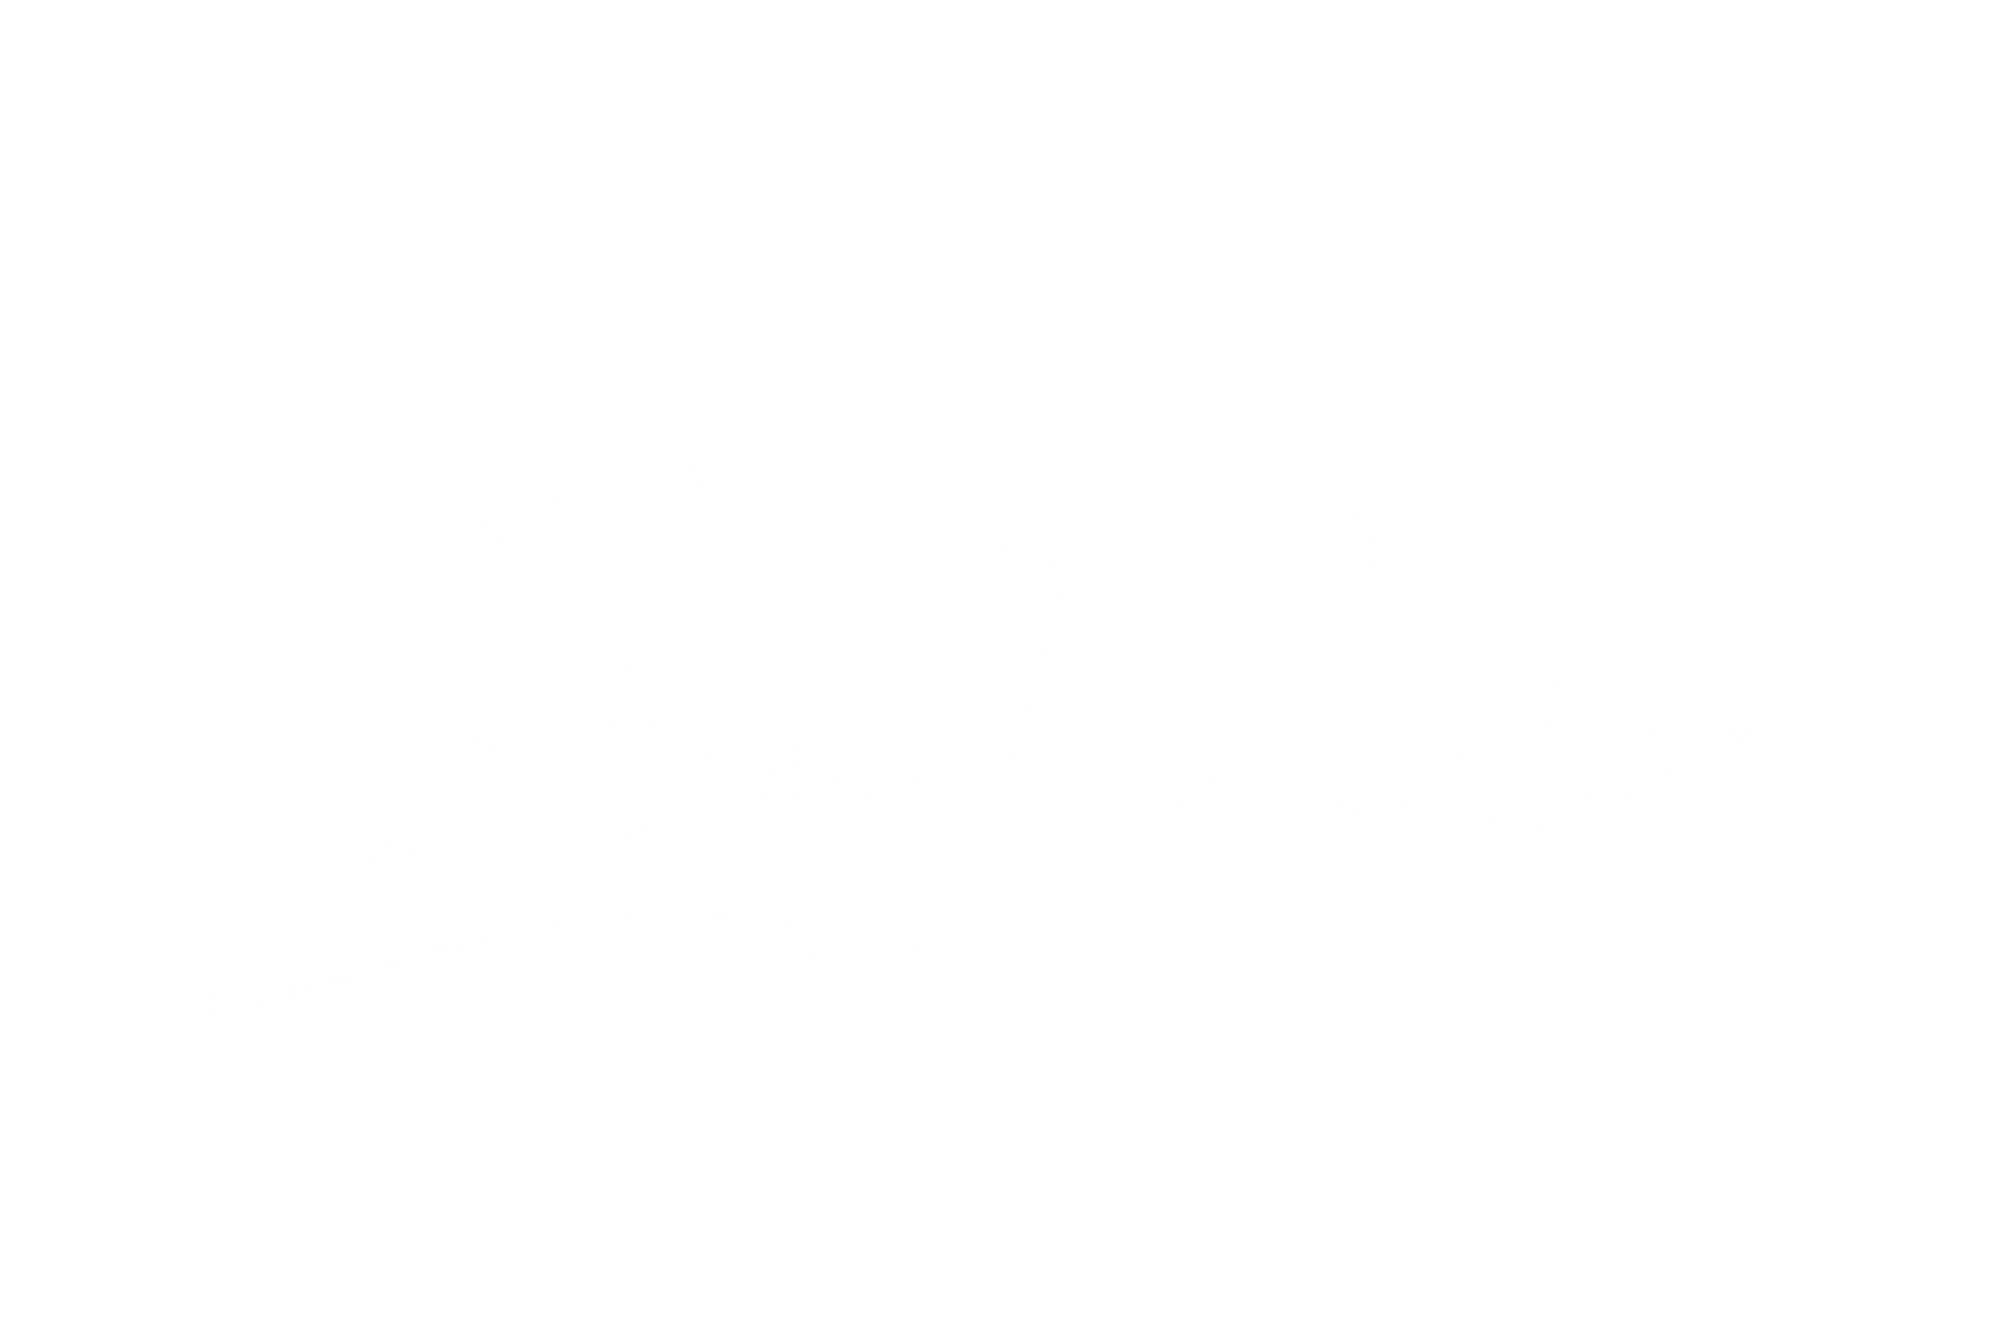 Zion Dials